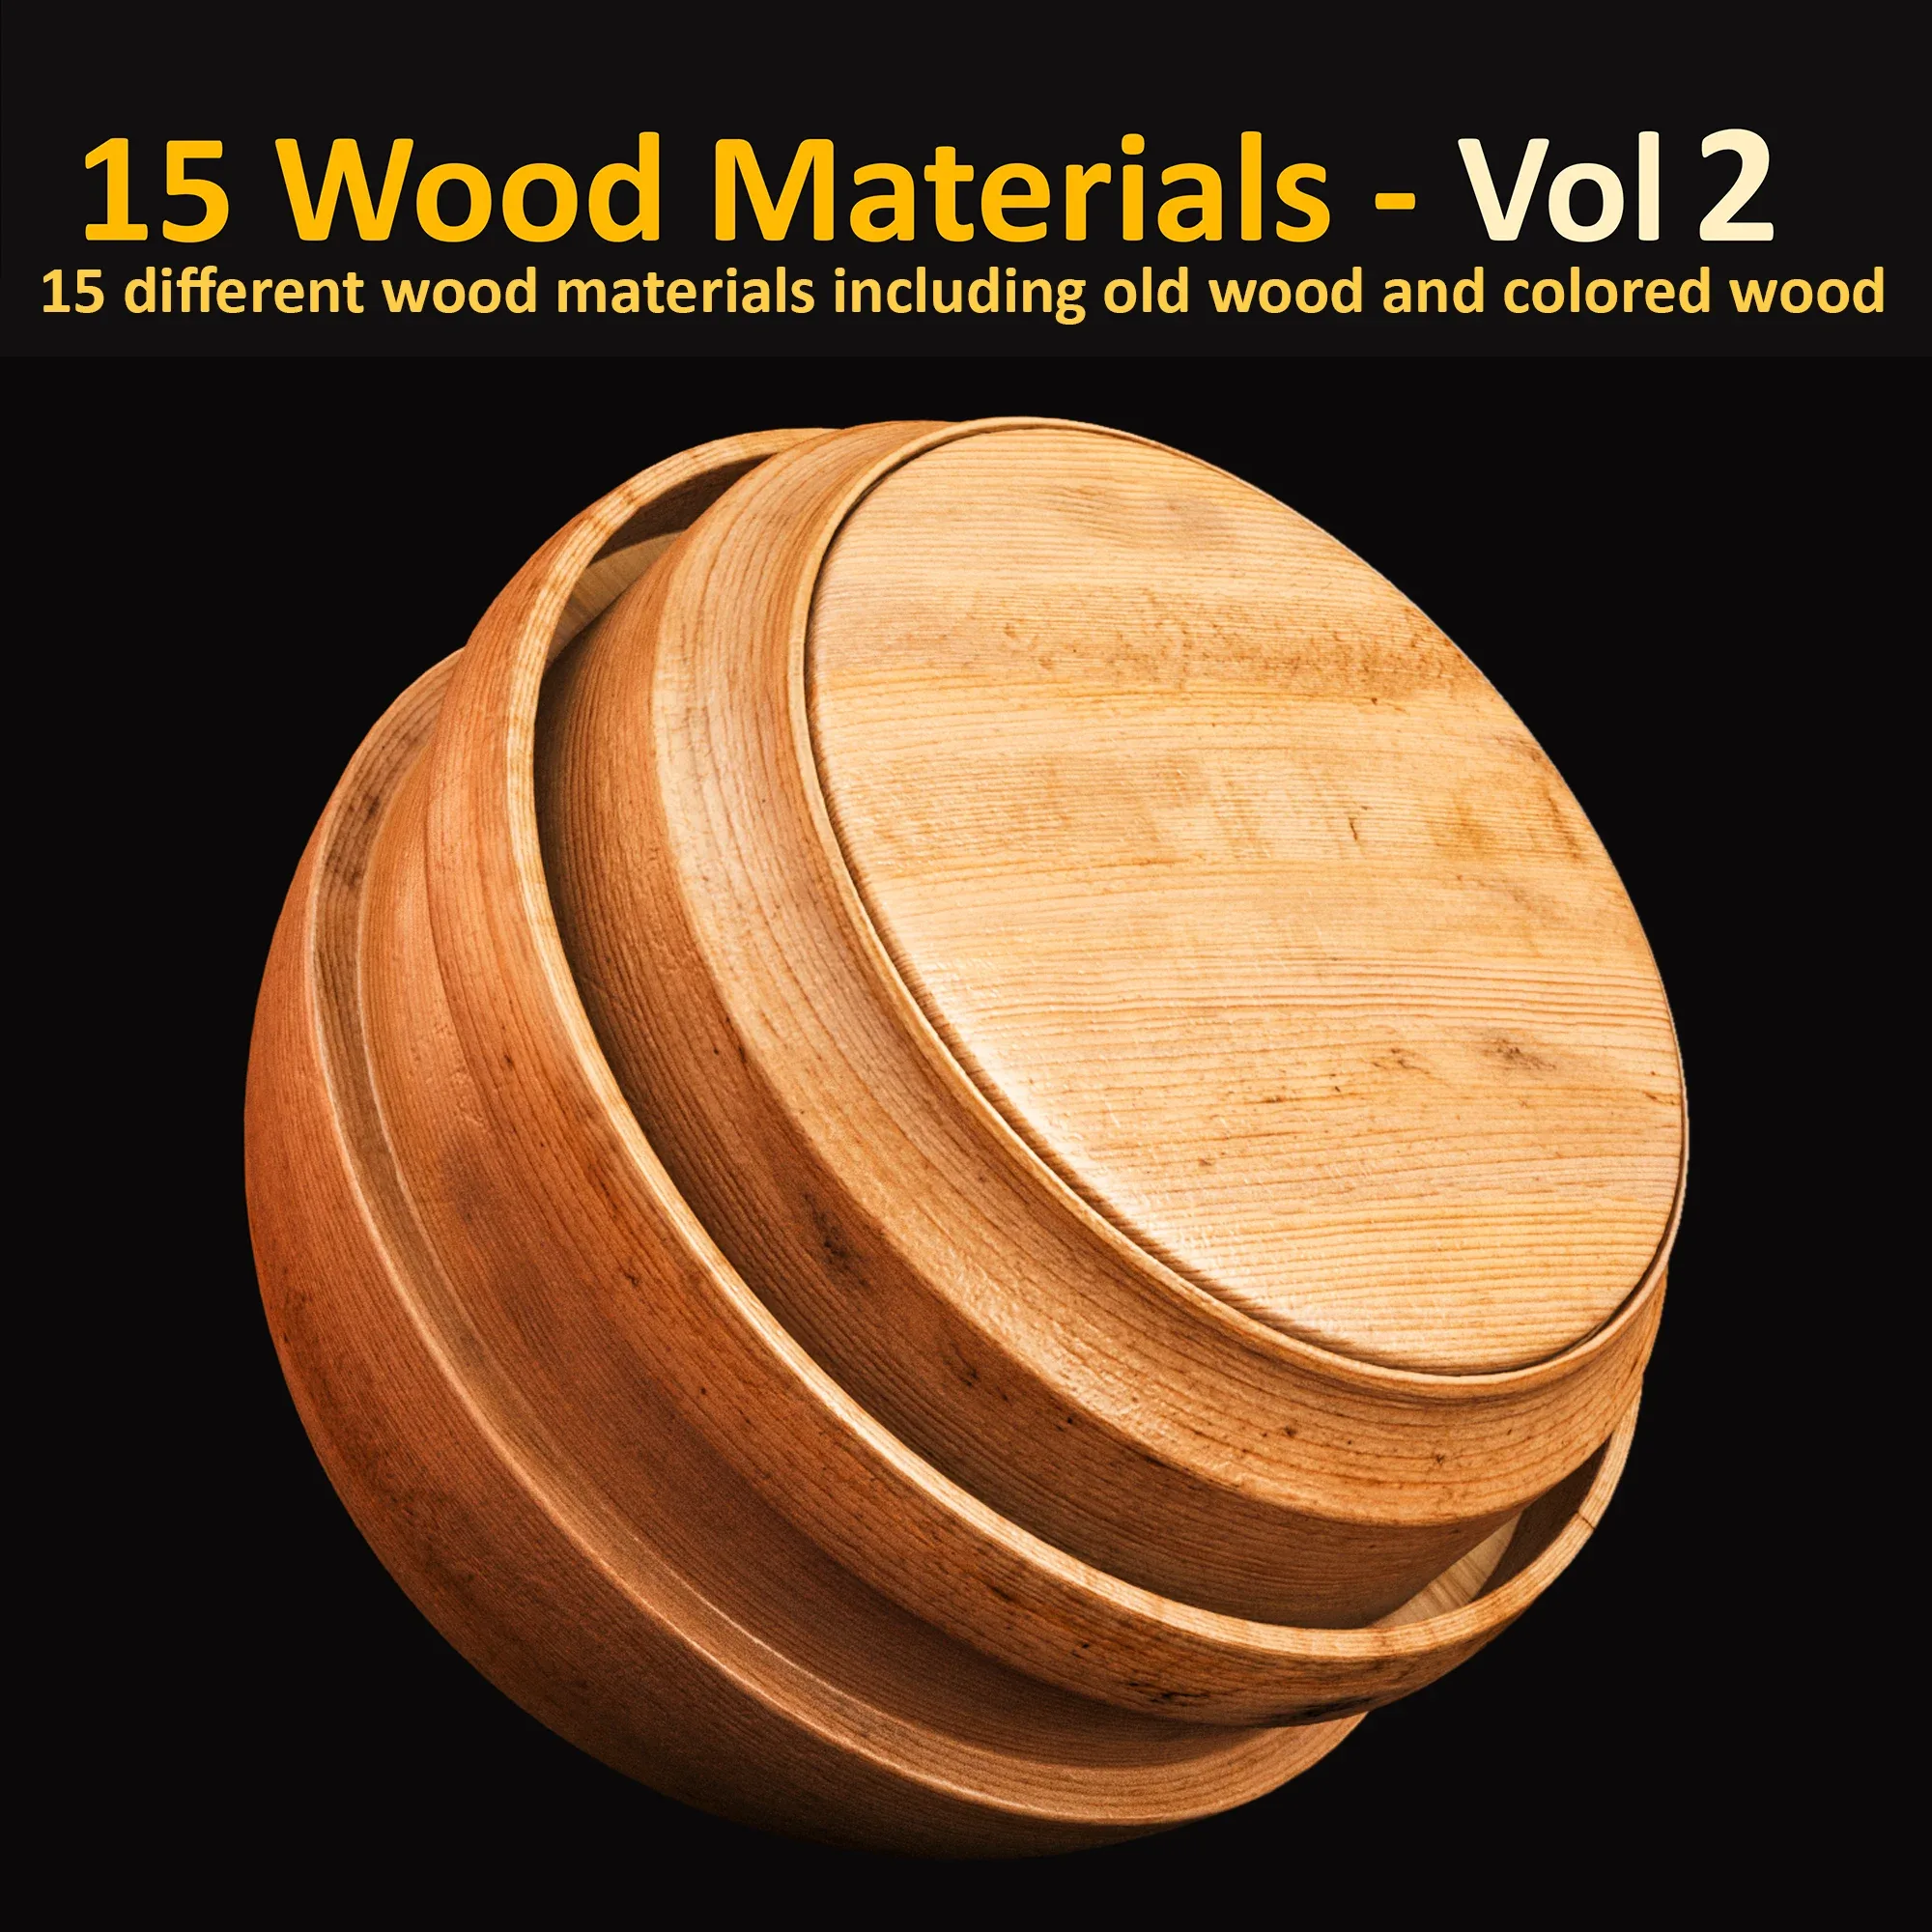 Wood Materials - Vol2